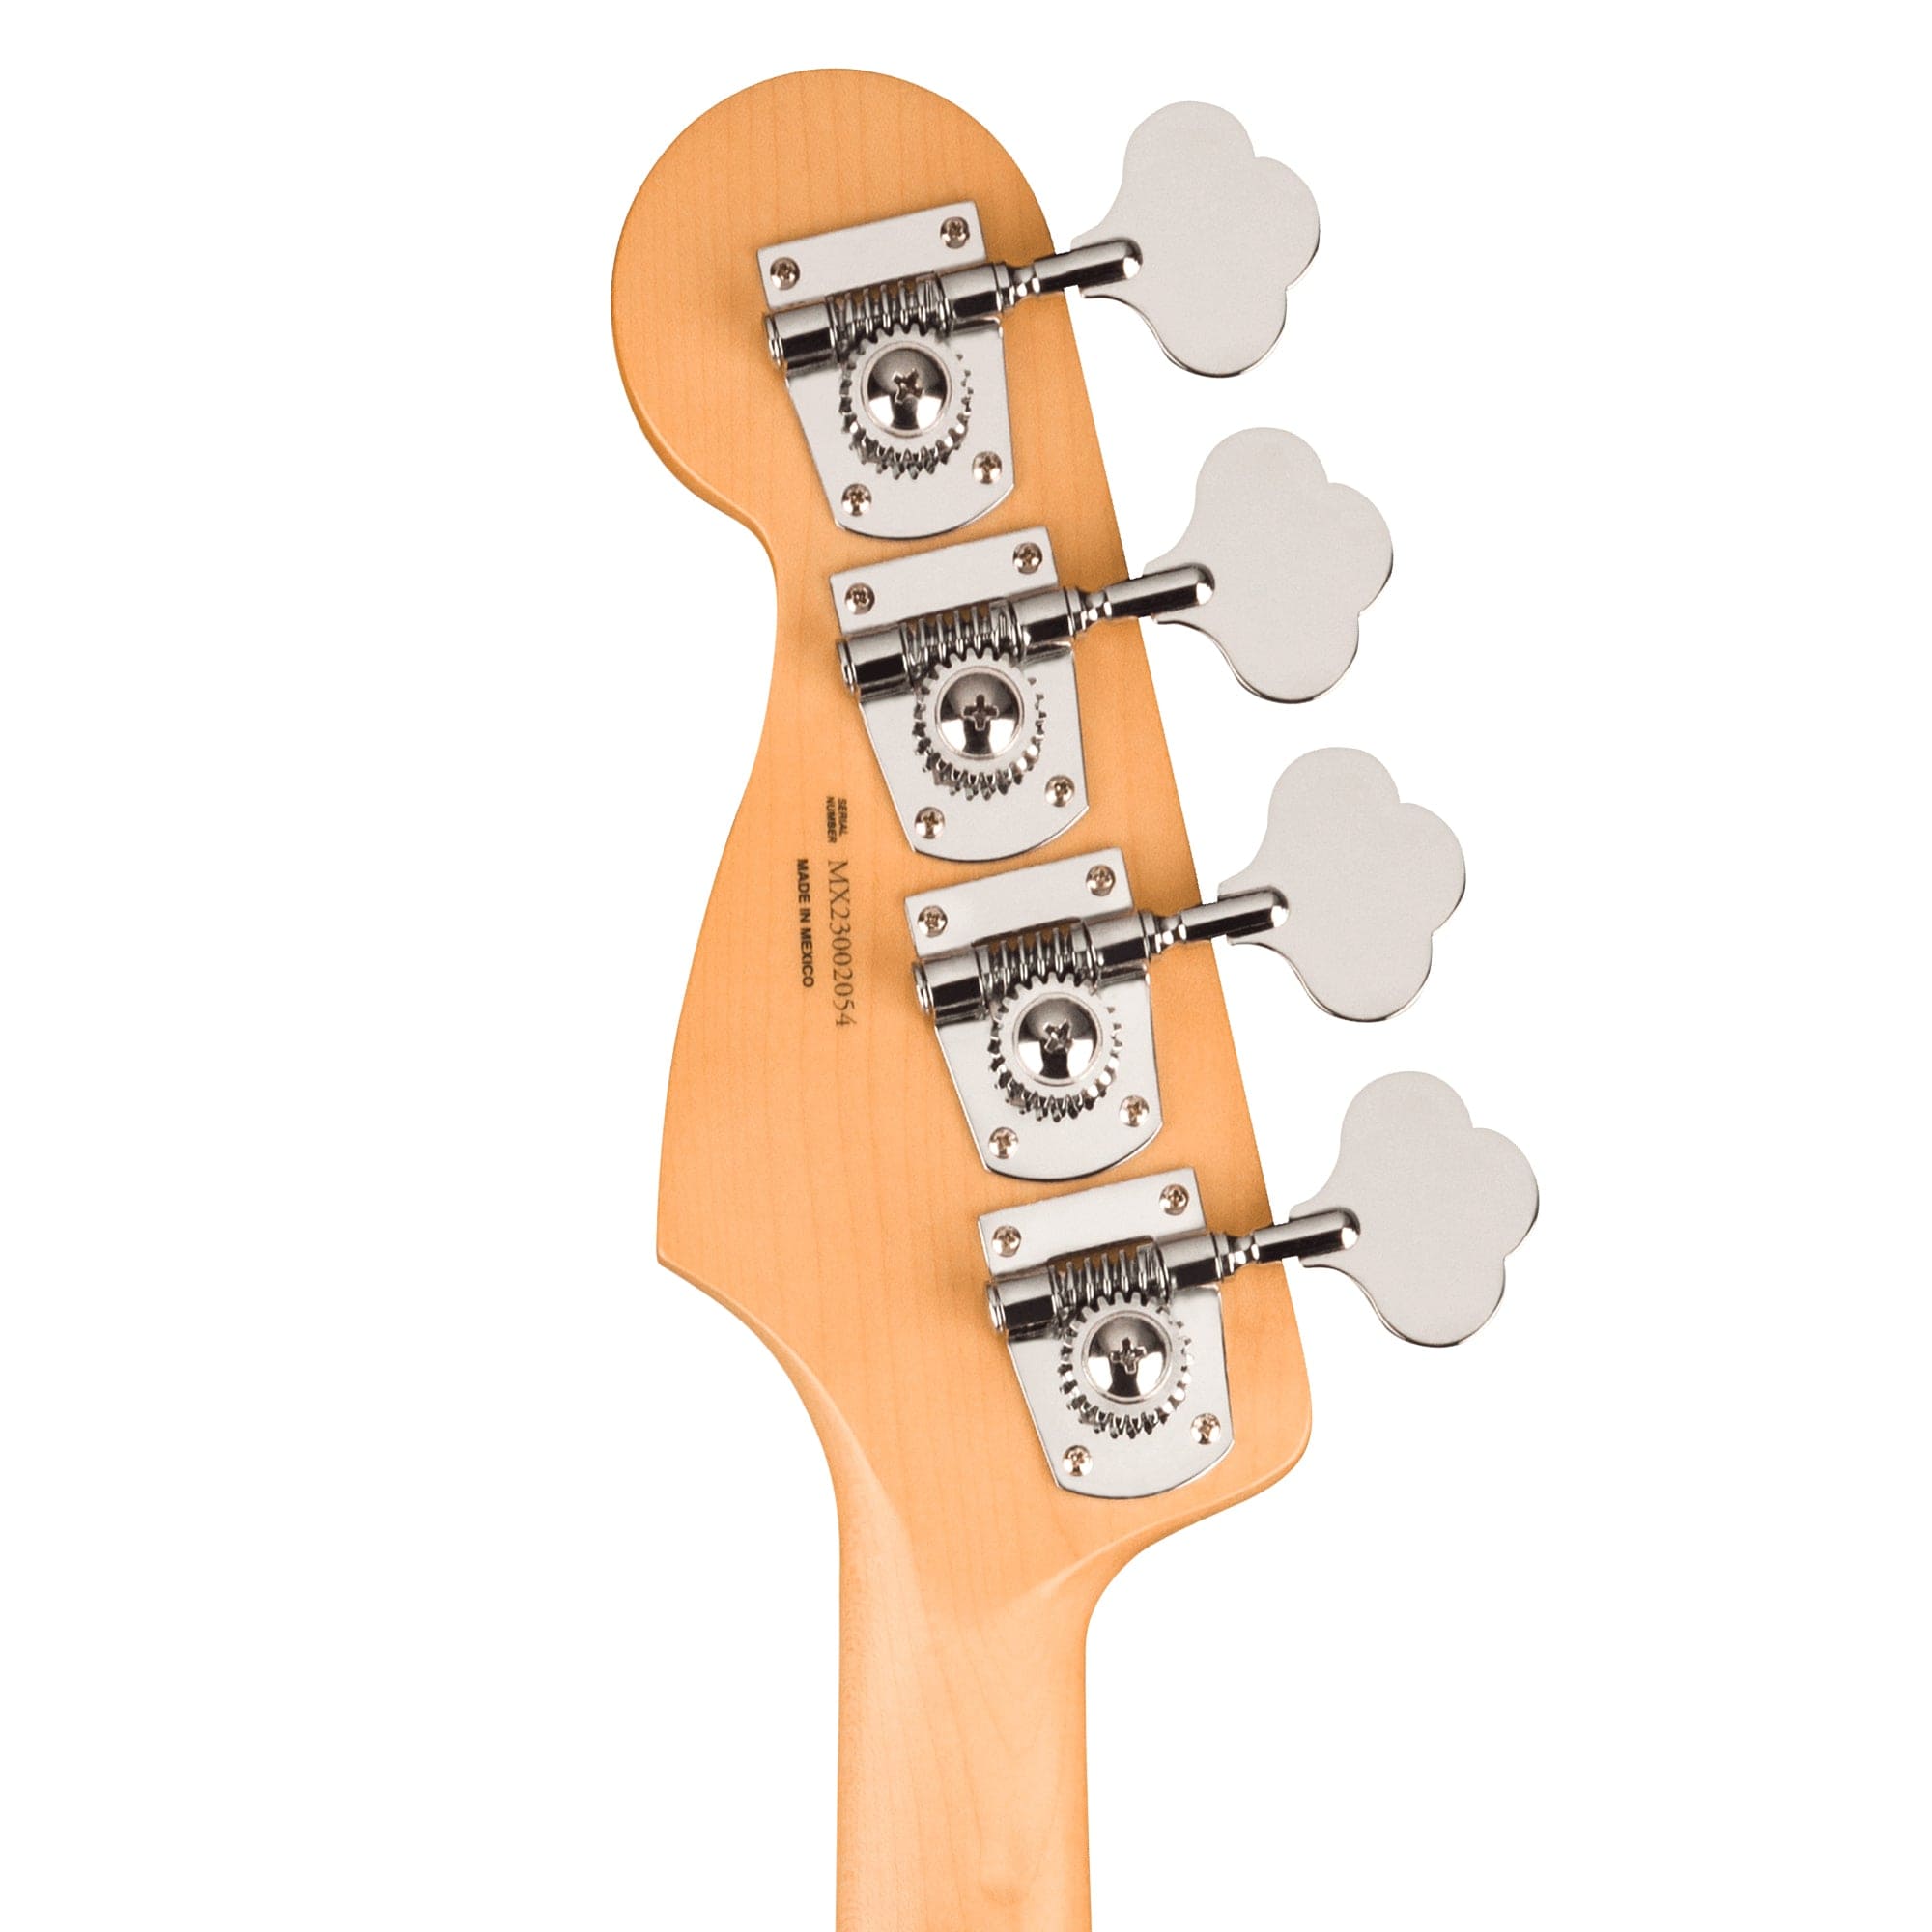 Fender Player Jaguar Bass Sea Foam Green Bass Guitars / 4-String